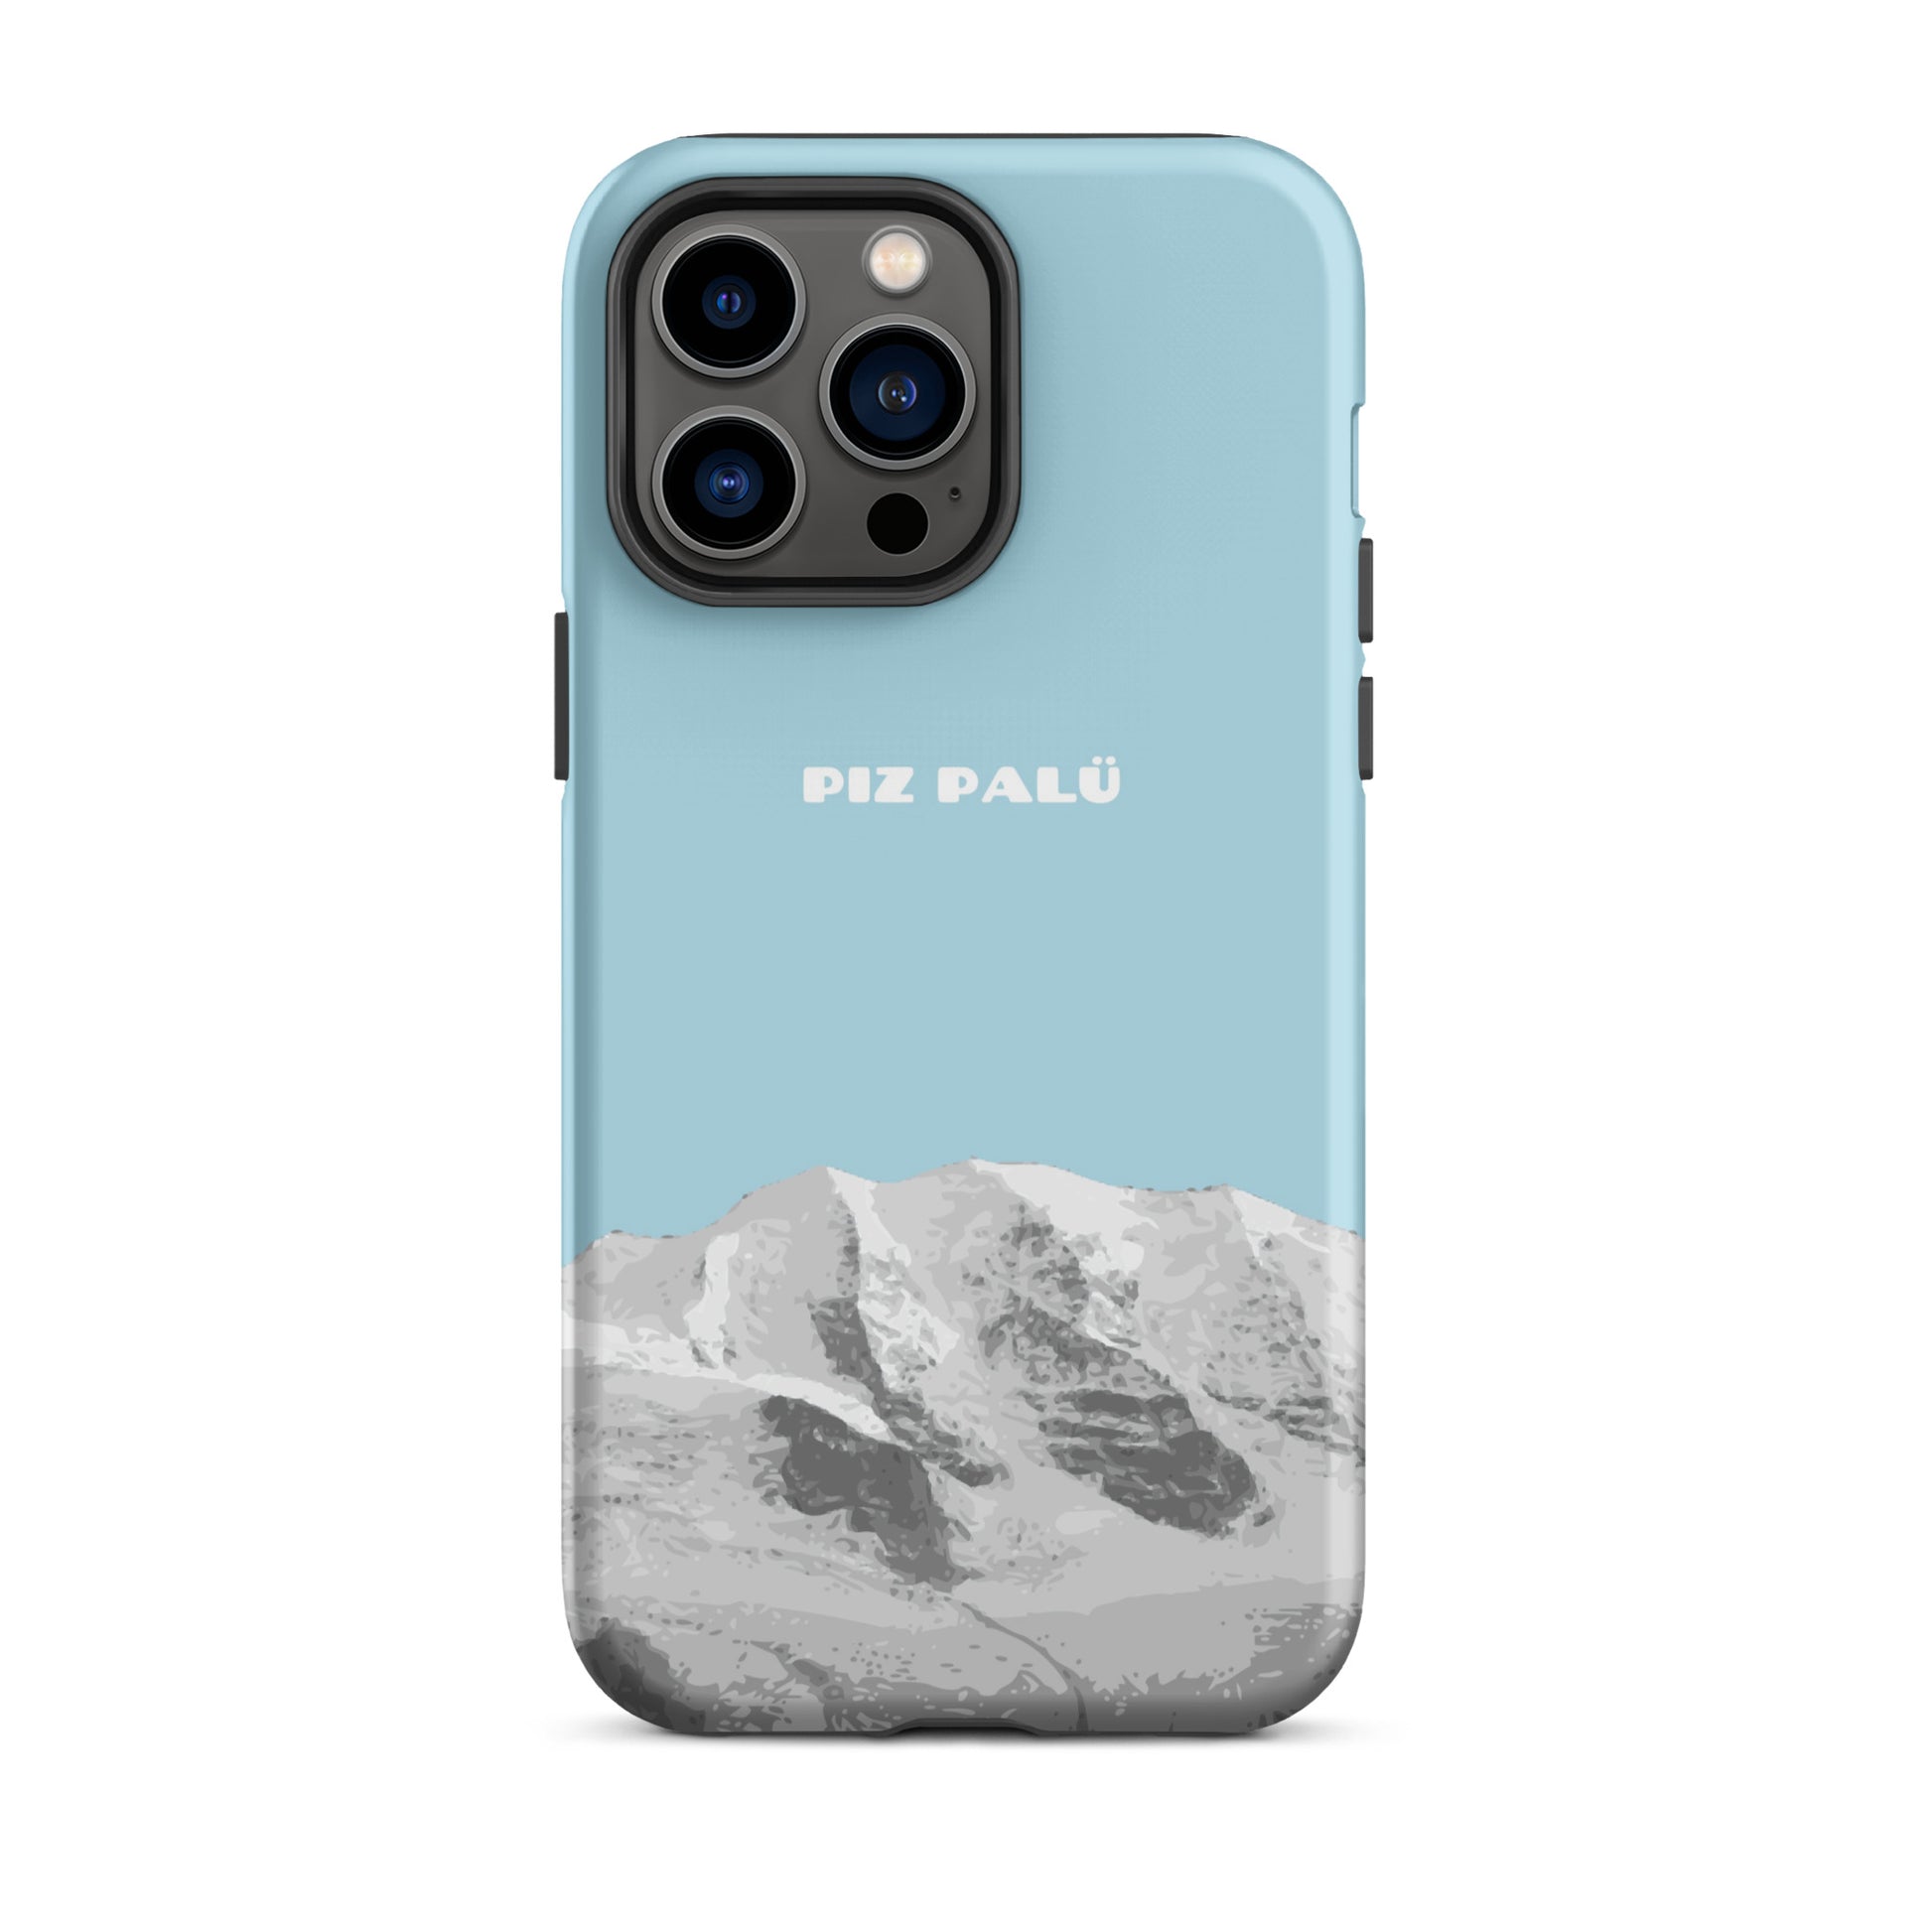 Hülle für das iPhone 14 Pro Max von Apple in der Farbe Hellblau, dass den Piz Palü in Graubünden zeigt.